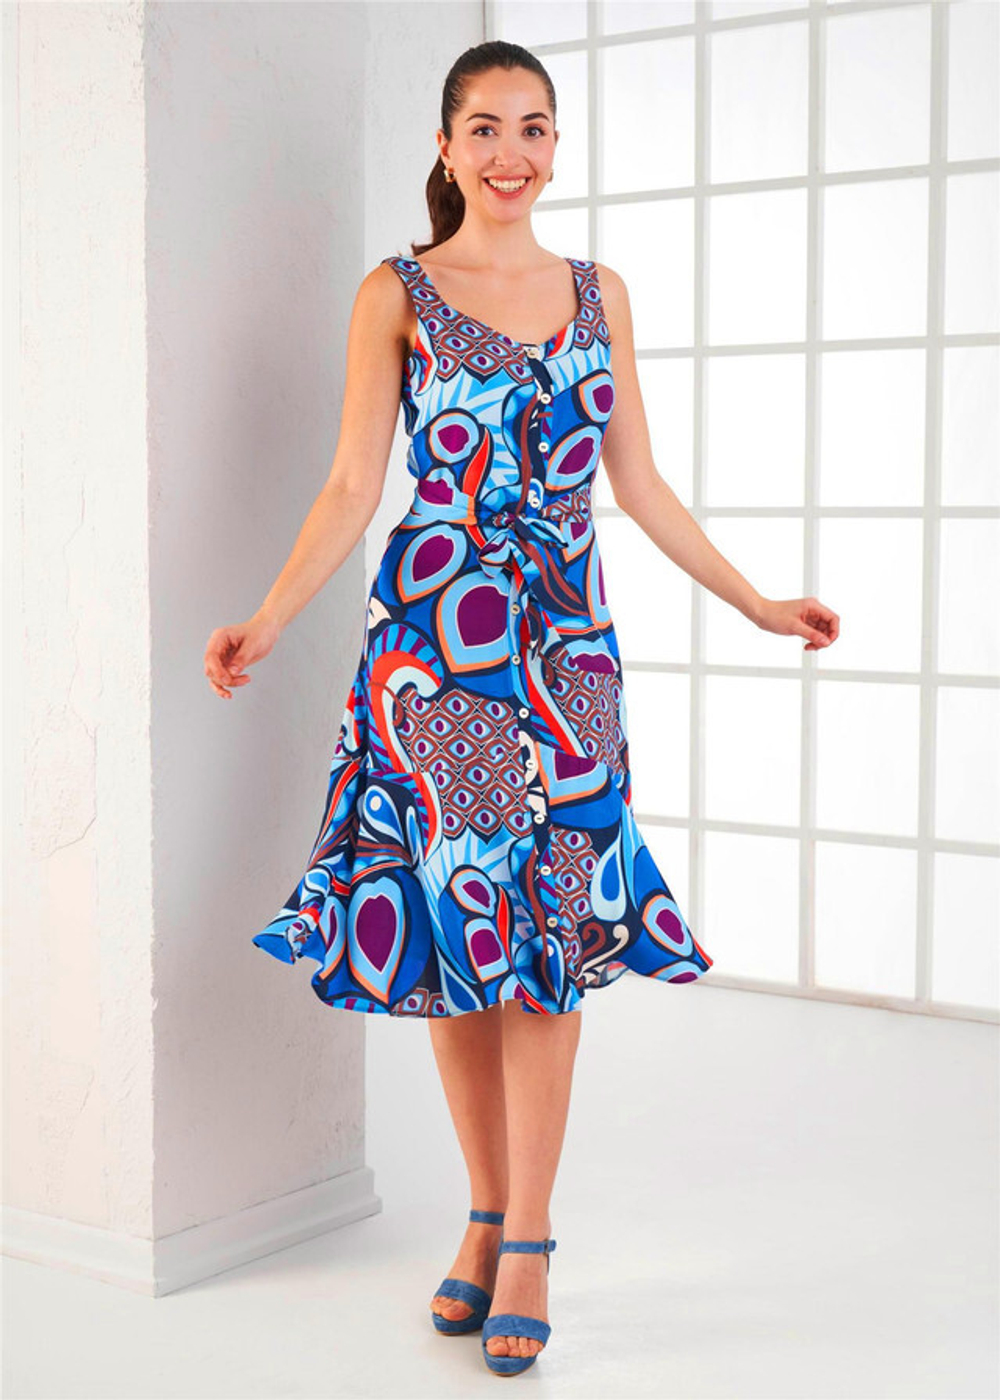 RELAX MODE / Платье женское летнее повседневное на пуговицах вискоза - 45414